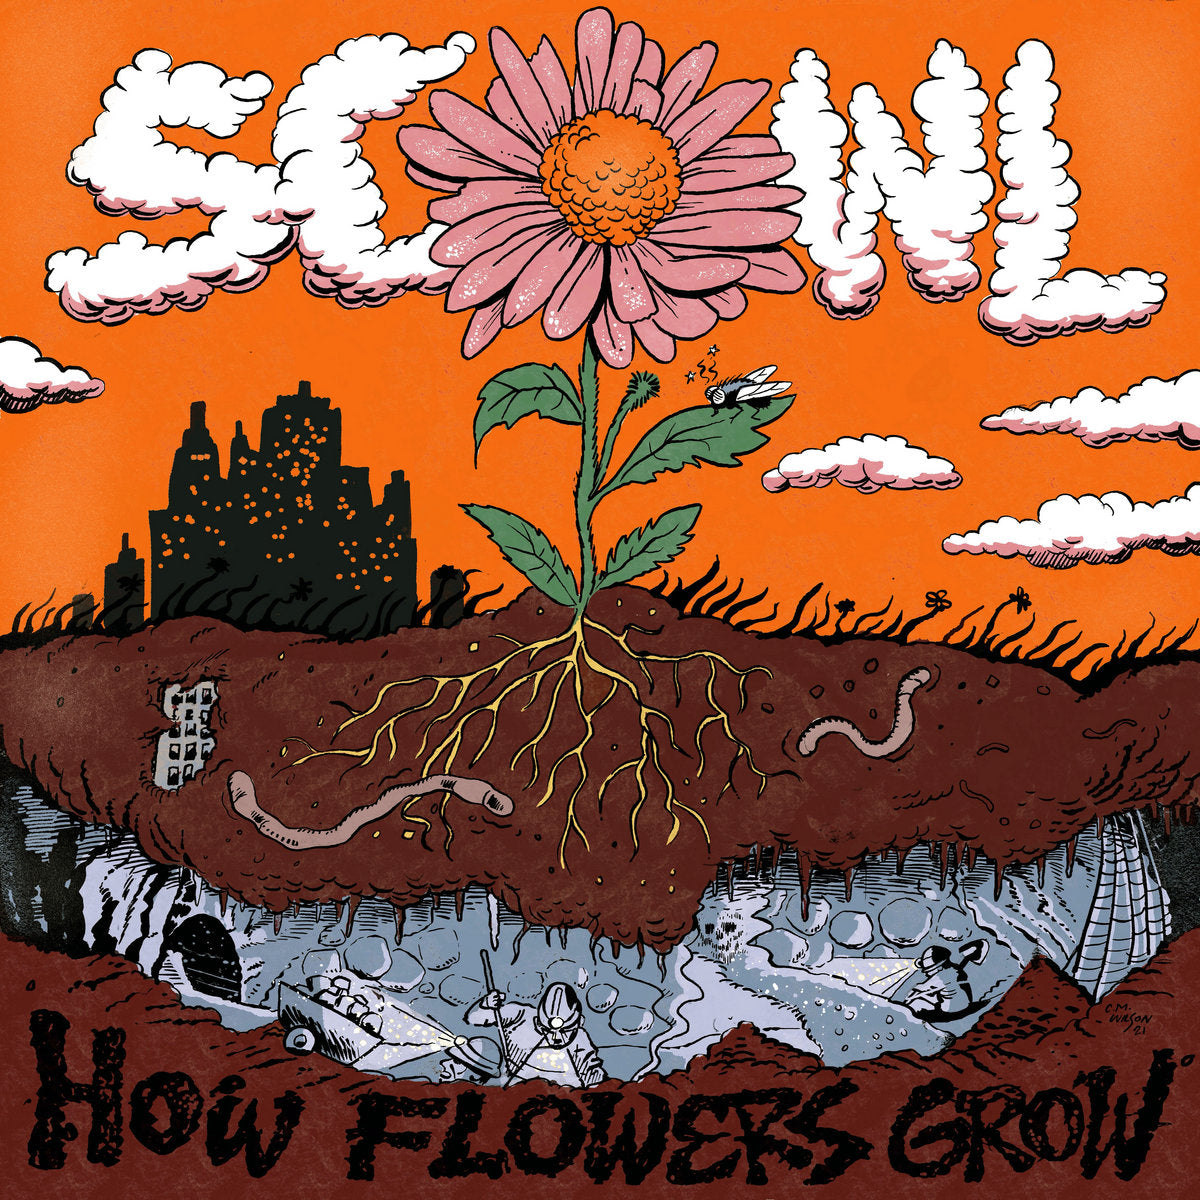 Scowl  "How Flowers Grow" CS